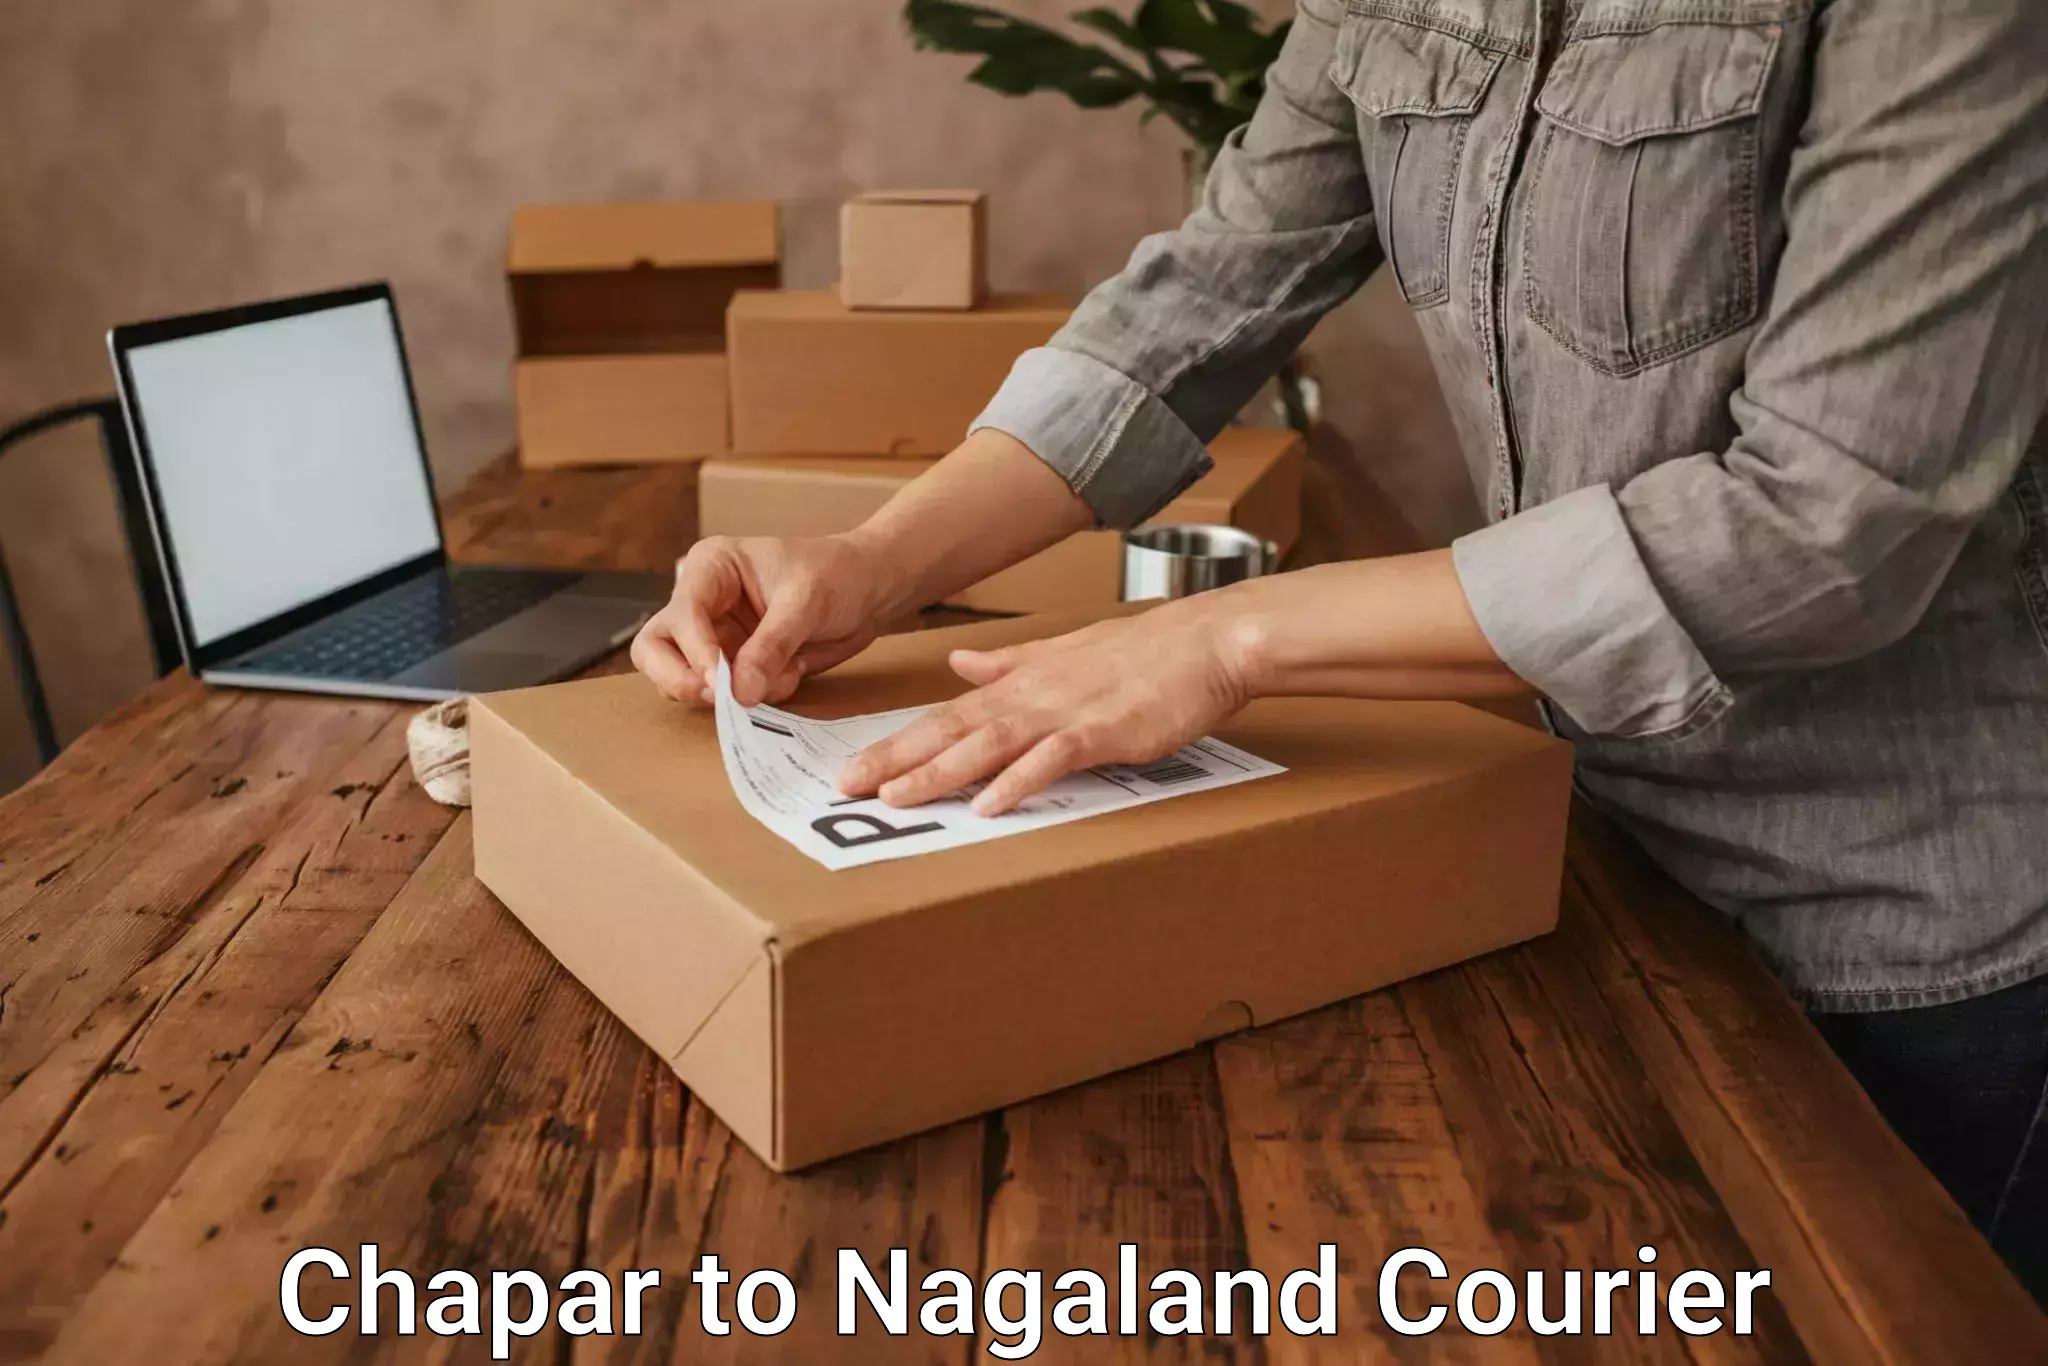 Full-service courier options Chapar to Dimapur